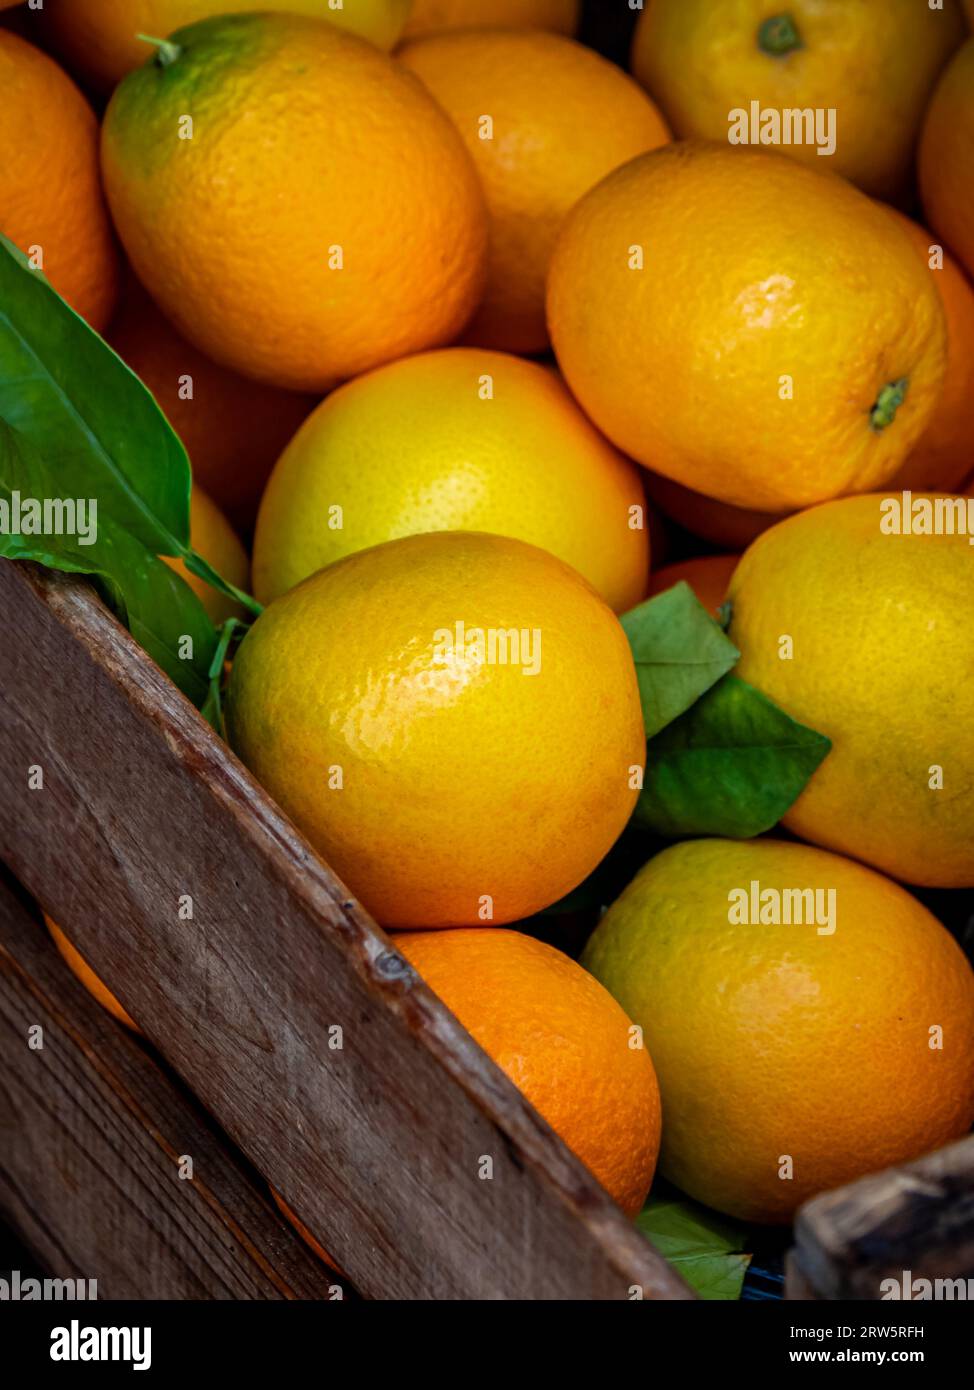 Arance Peret in scatola di legno, speciale varietà di arancio della valle di Sóller con una forma unica simile alla pera, vivace colore giallo-verde e una perfetta Foto Stock